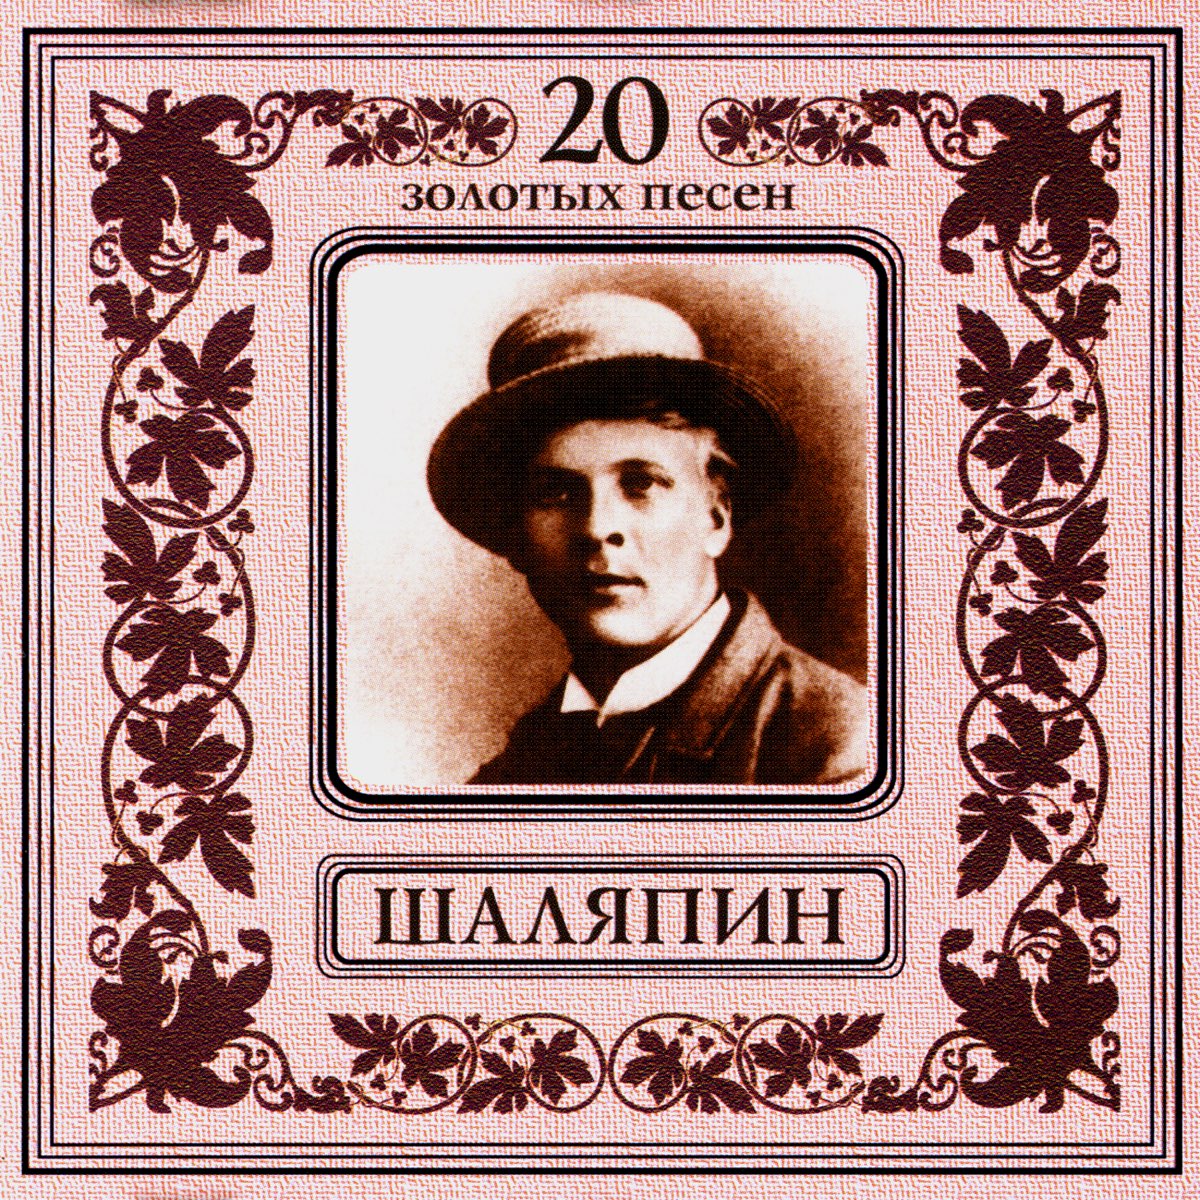 Шаляпин очи. Федора Ивановича Шаляпина. Фёдор Шаляпин 1929. Шаляпин оперный певец.